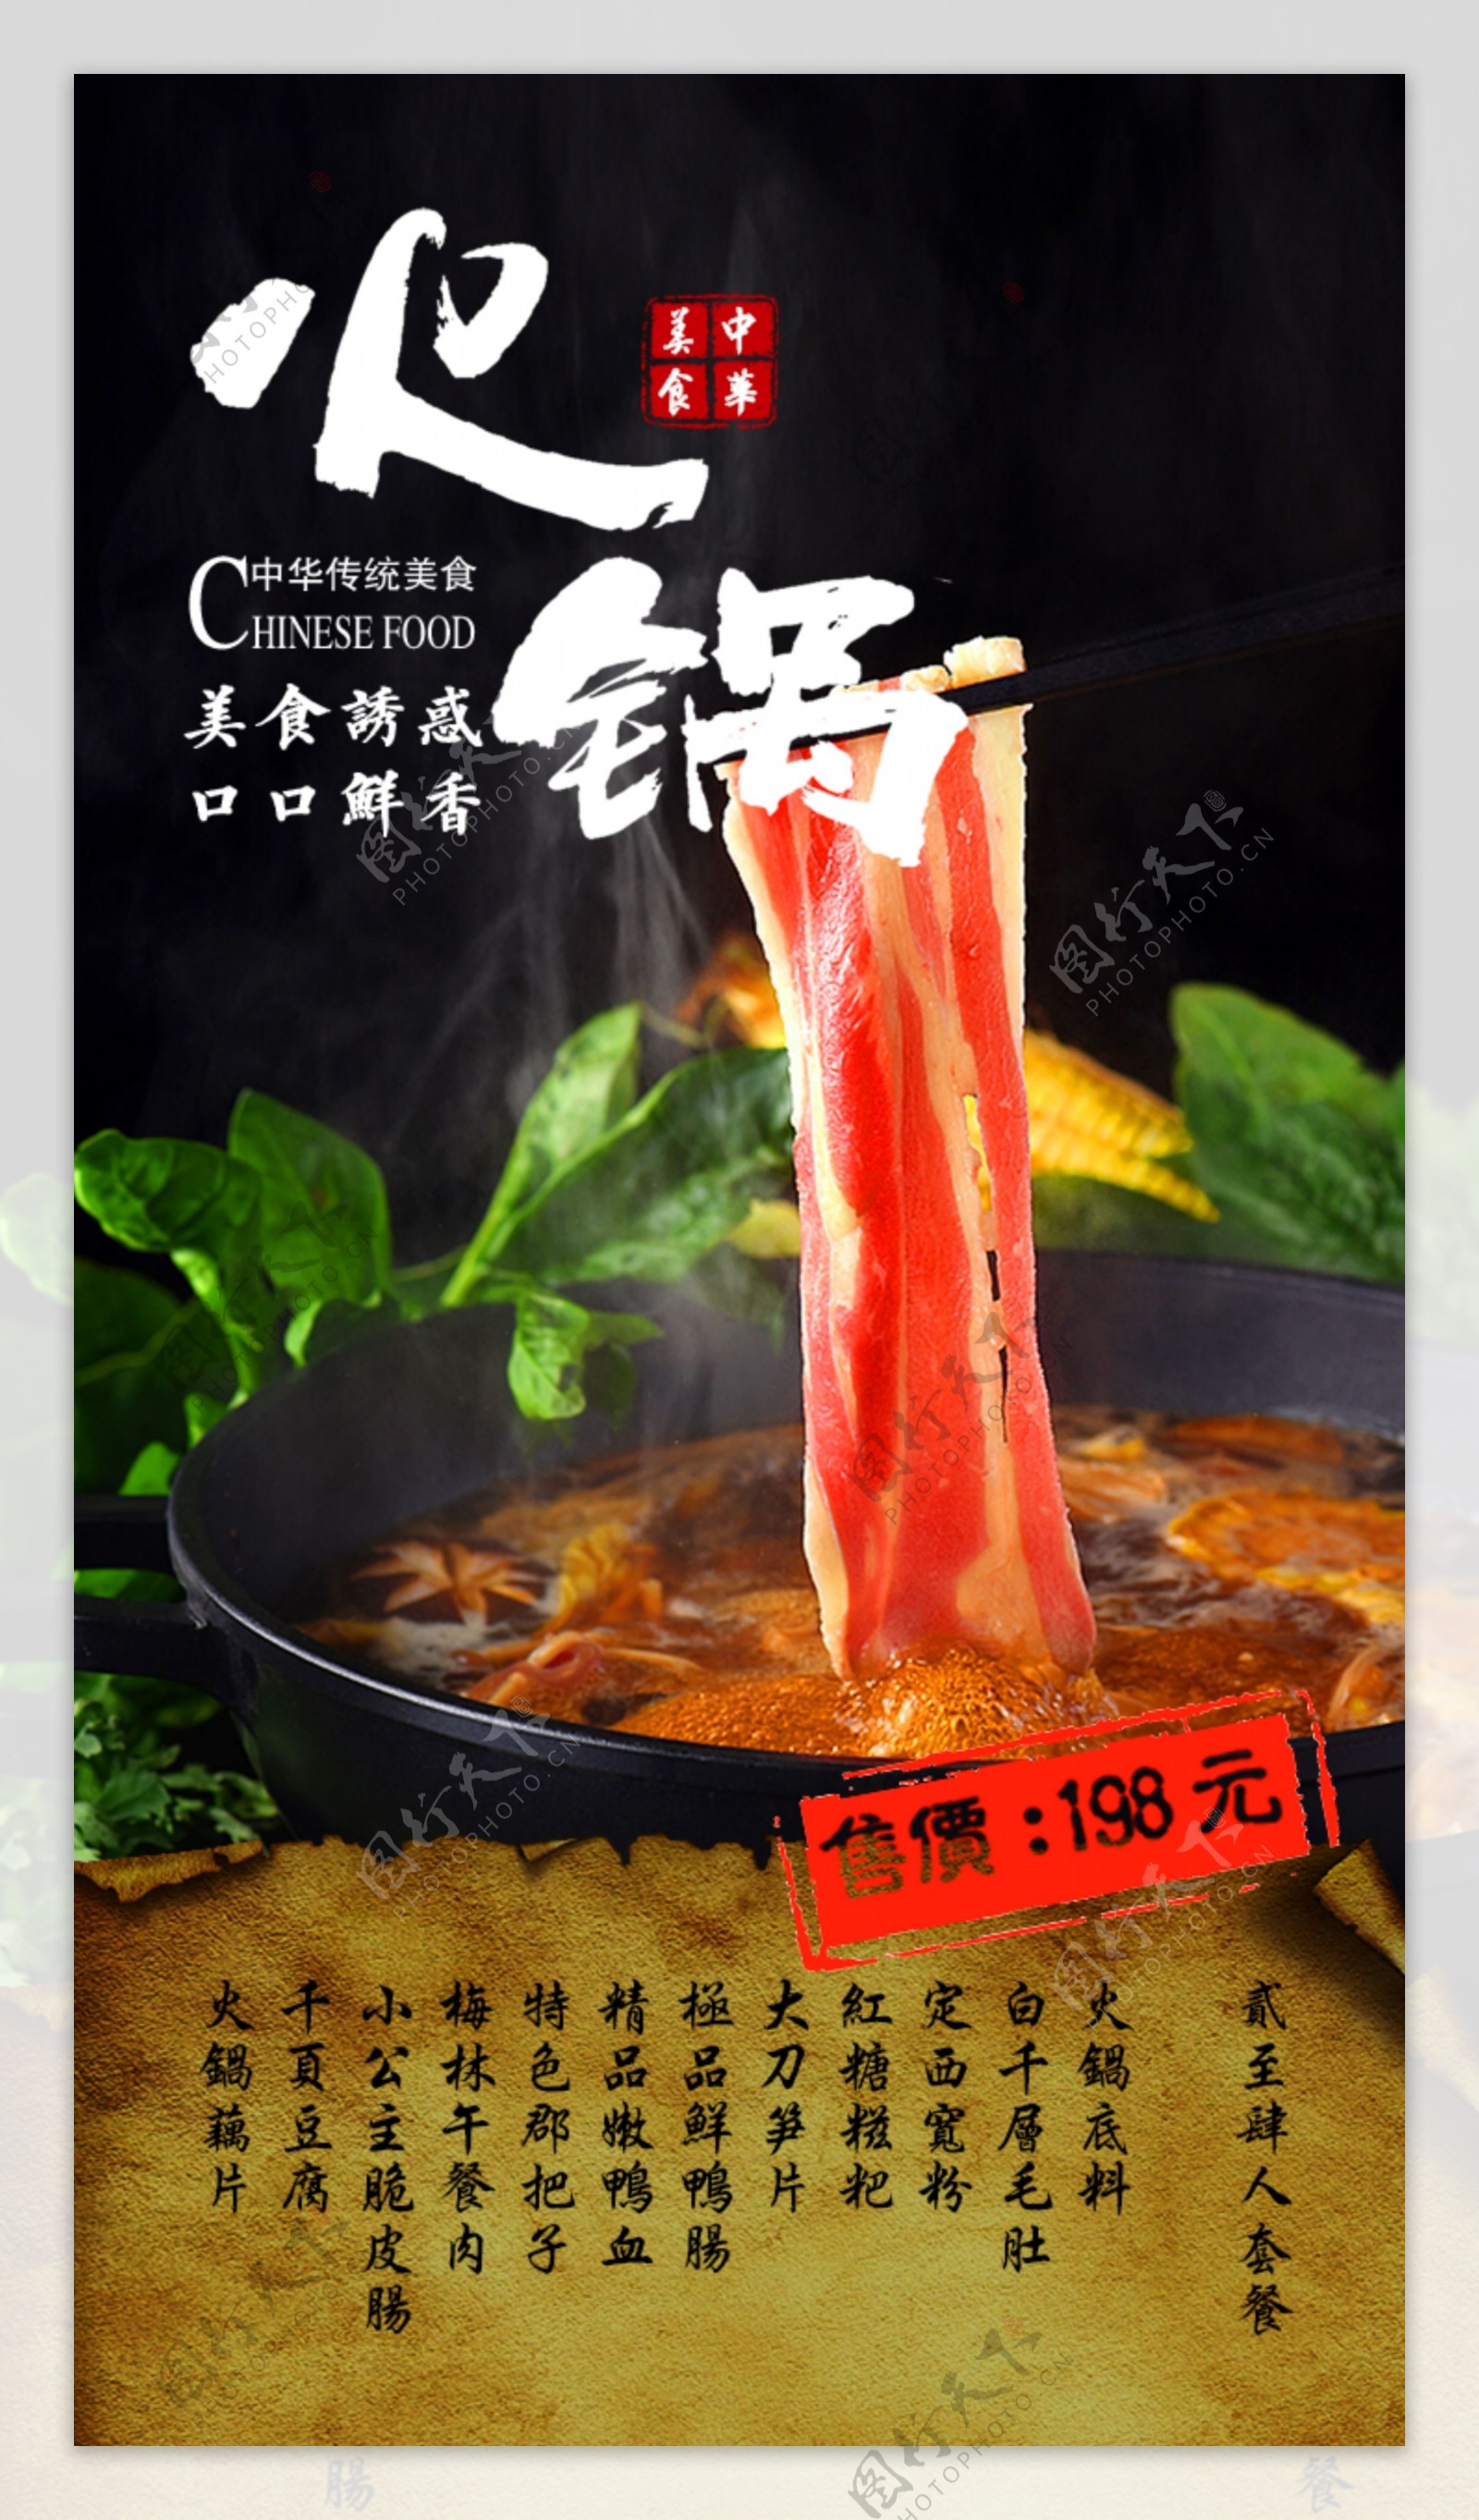 火锅美食宣传海报